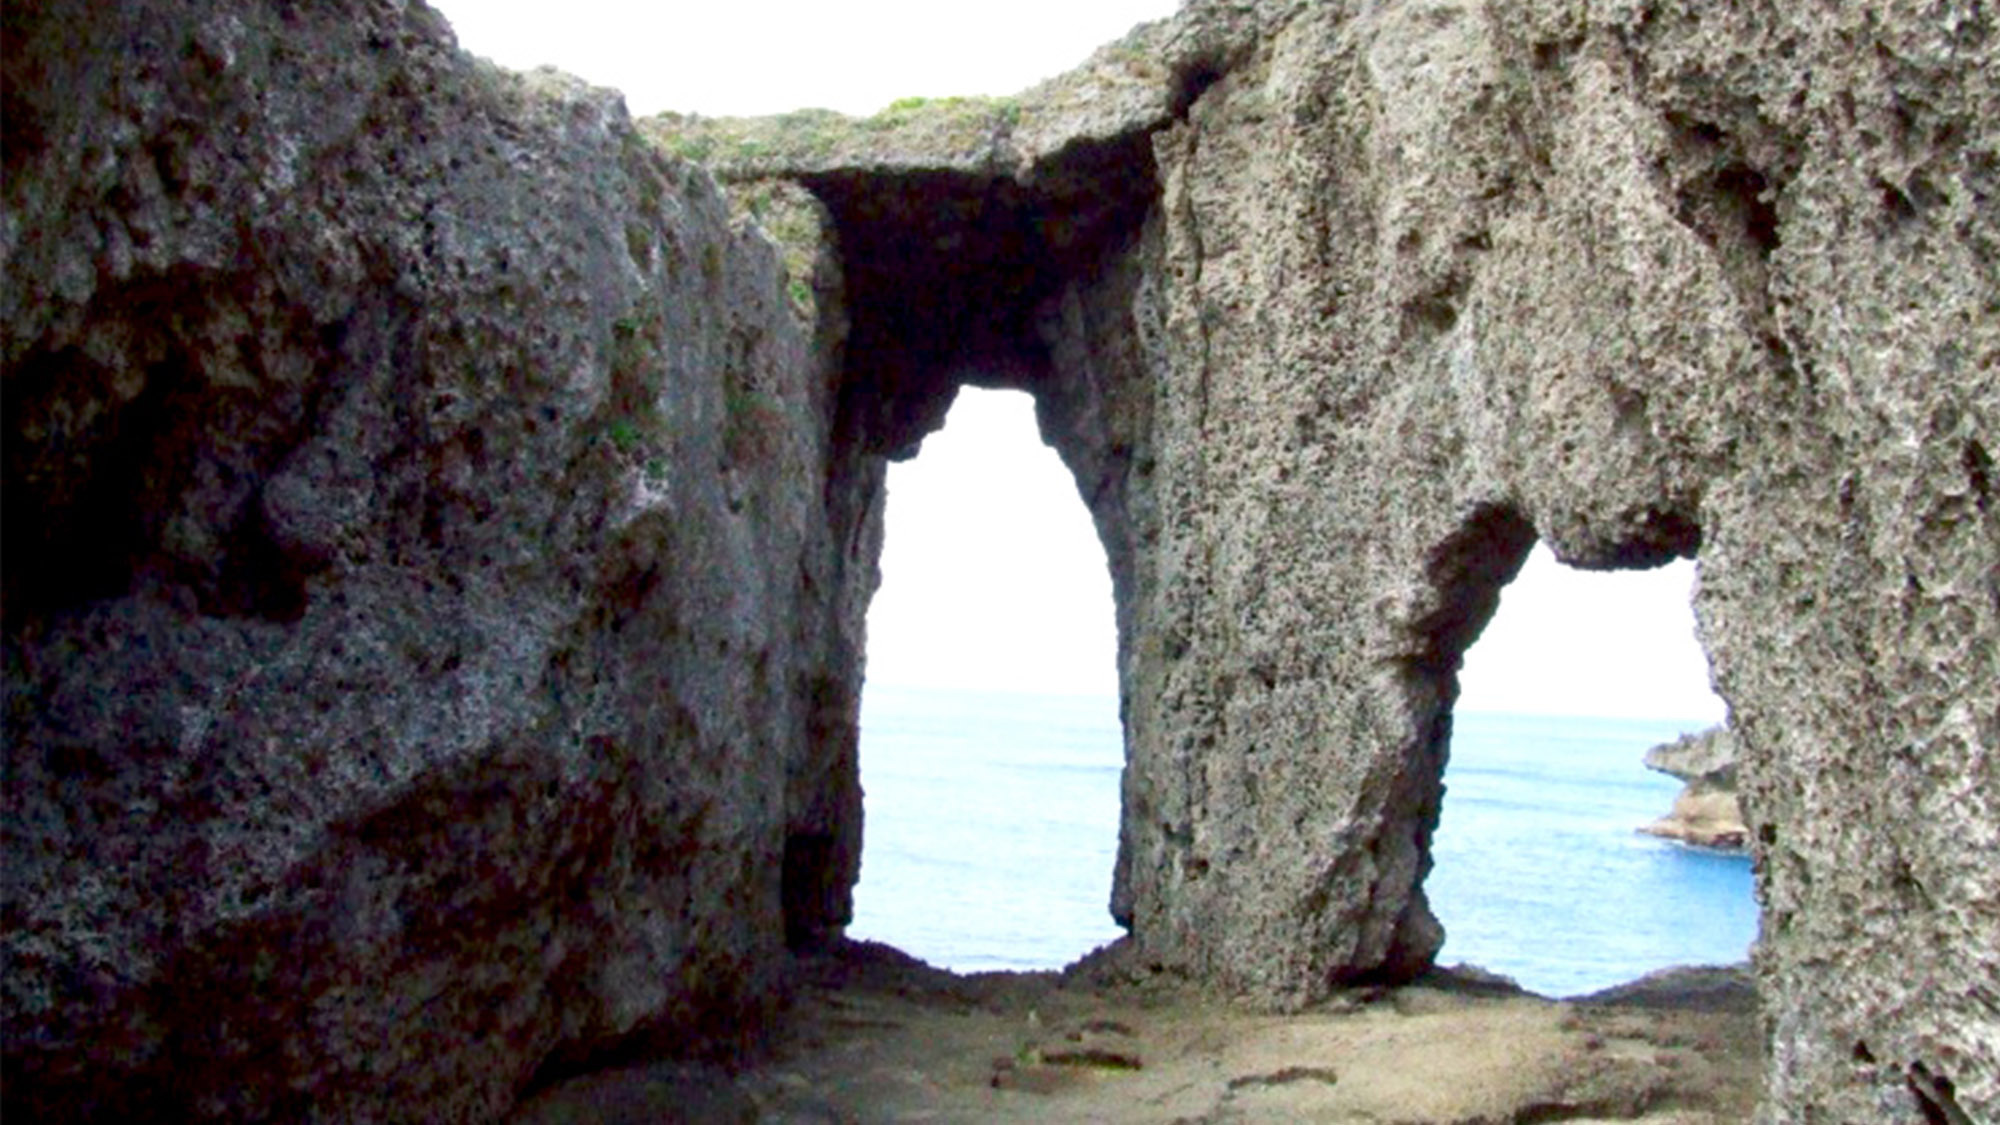 ・犬の門蓋（いんのじょうふた）この海岸一帯には奇岩や断崖が多く見られます